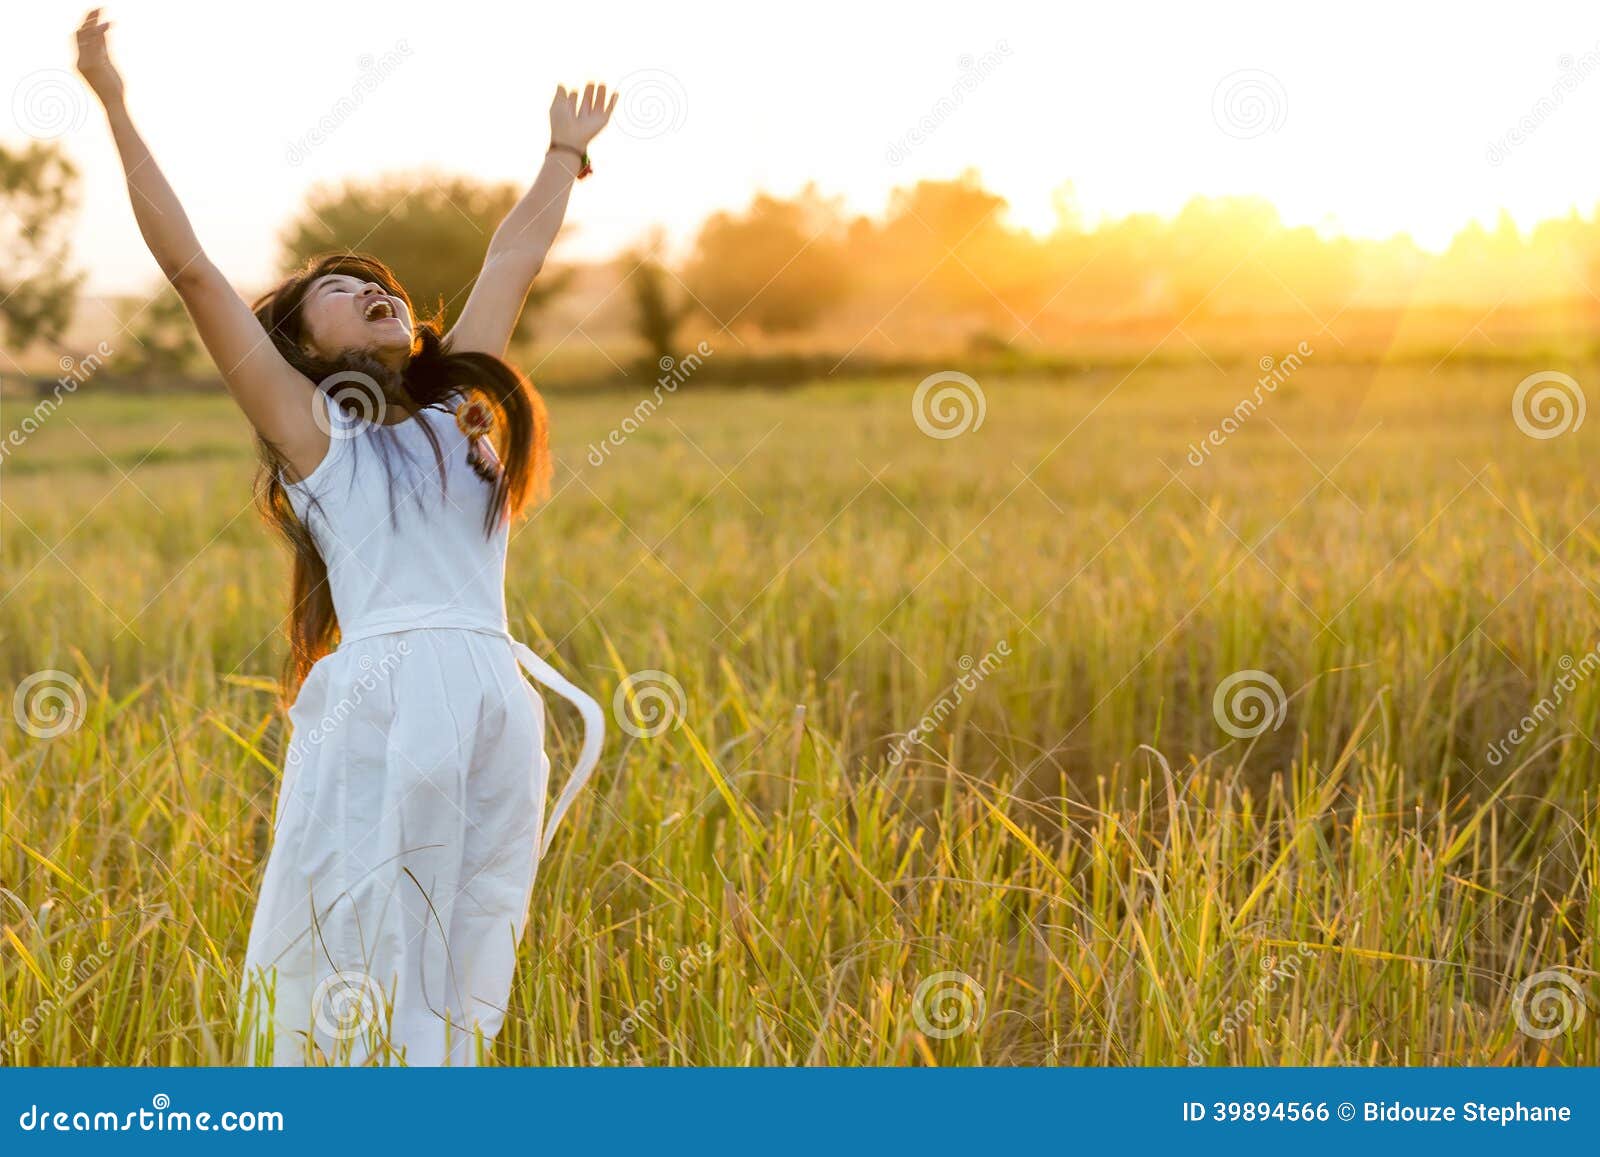 joyful woman in a field